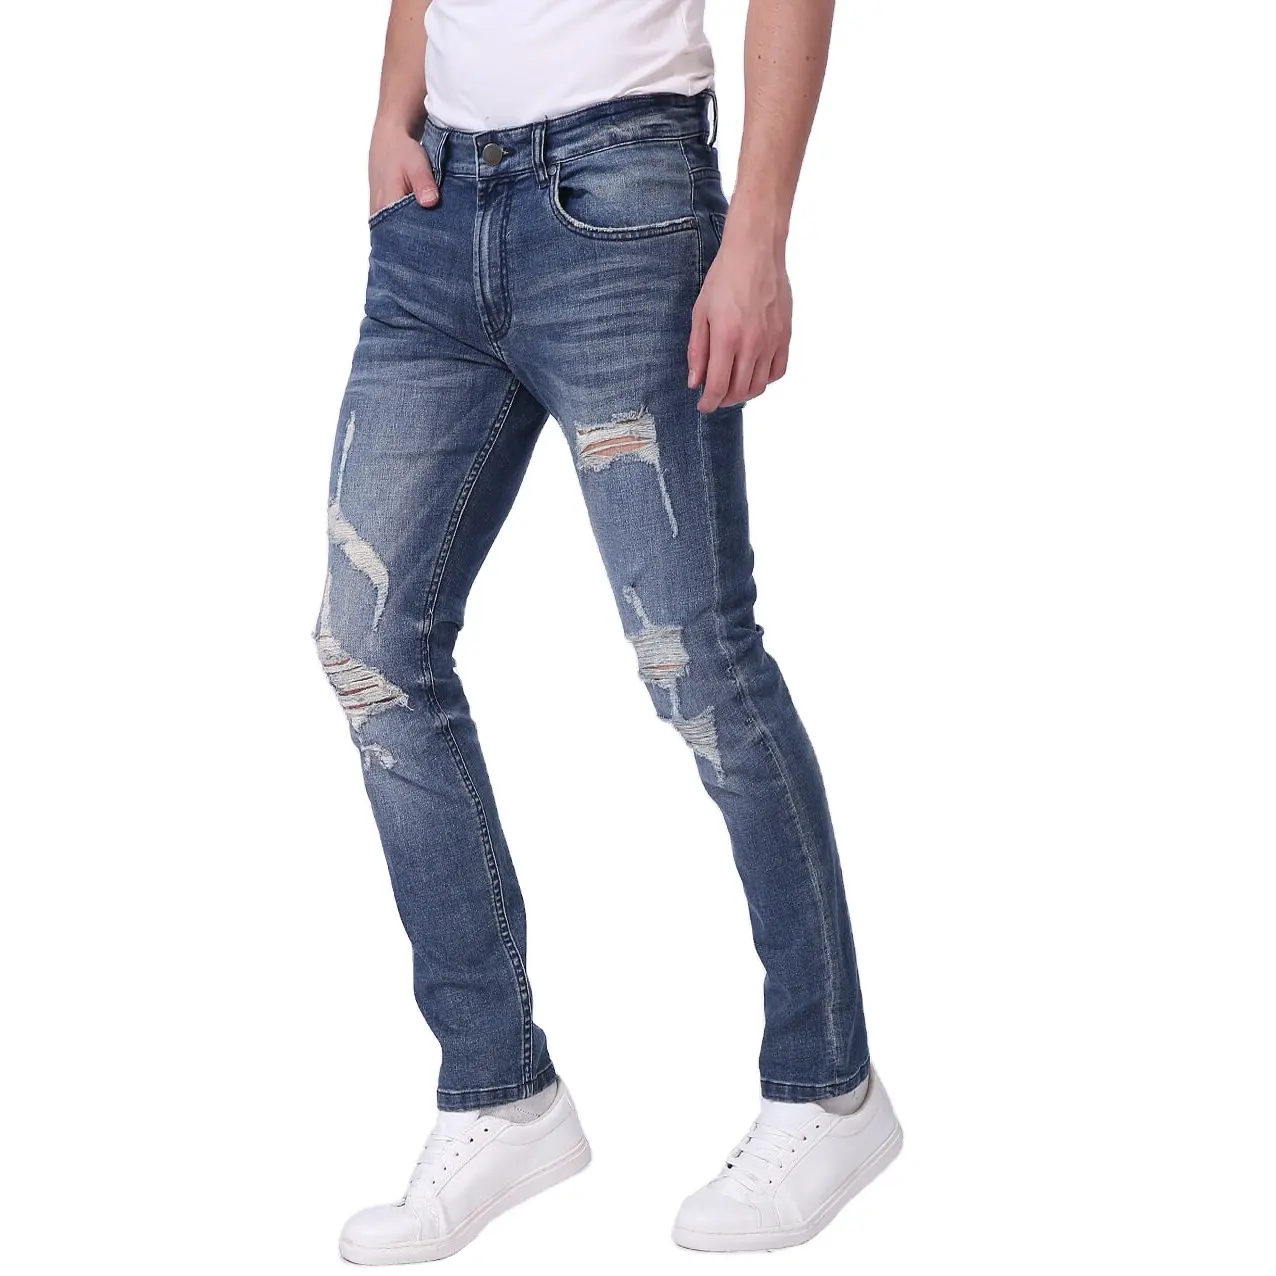 2021 Prezzo a buon mercato Alla Moda Dritto E Sottile Del Denim Dei Jeans degli uomini All'ingrosso Pantaloni Da Bangladesh